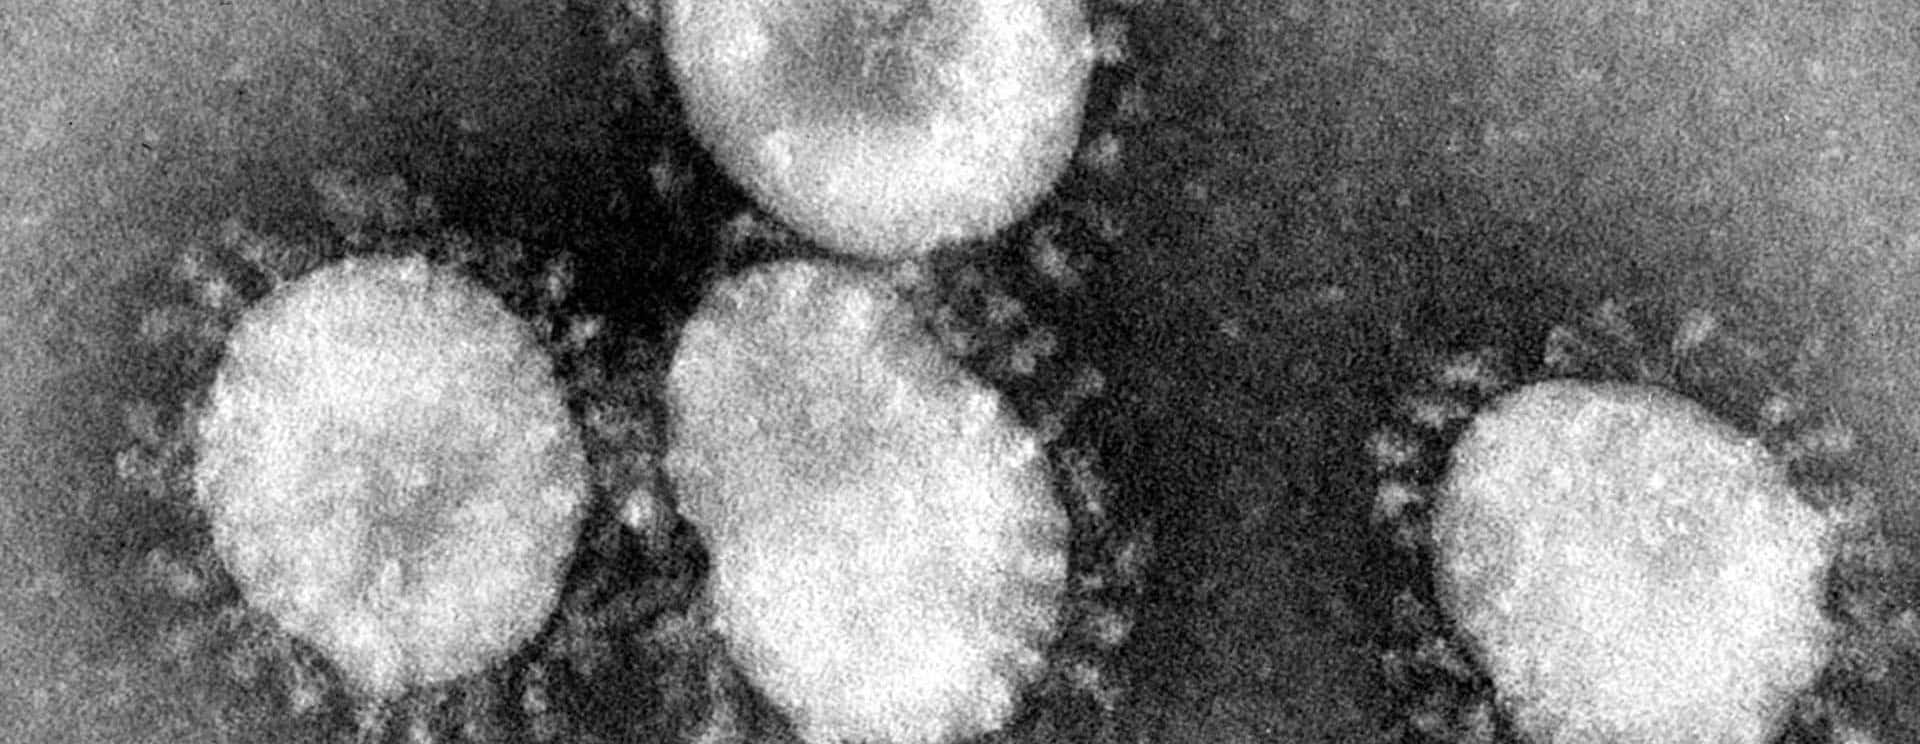 coronaviruses-jpg-21